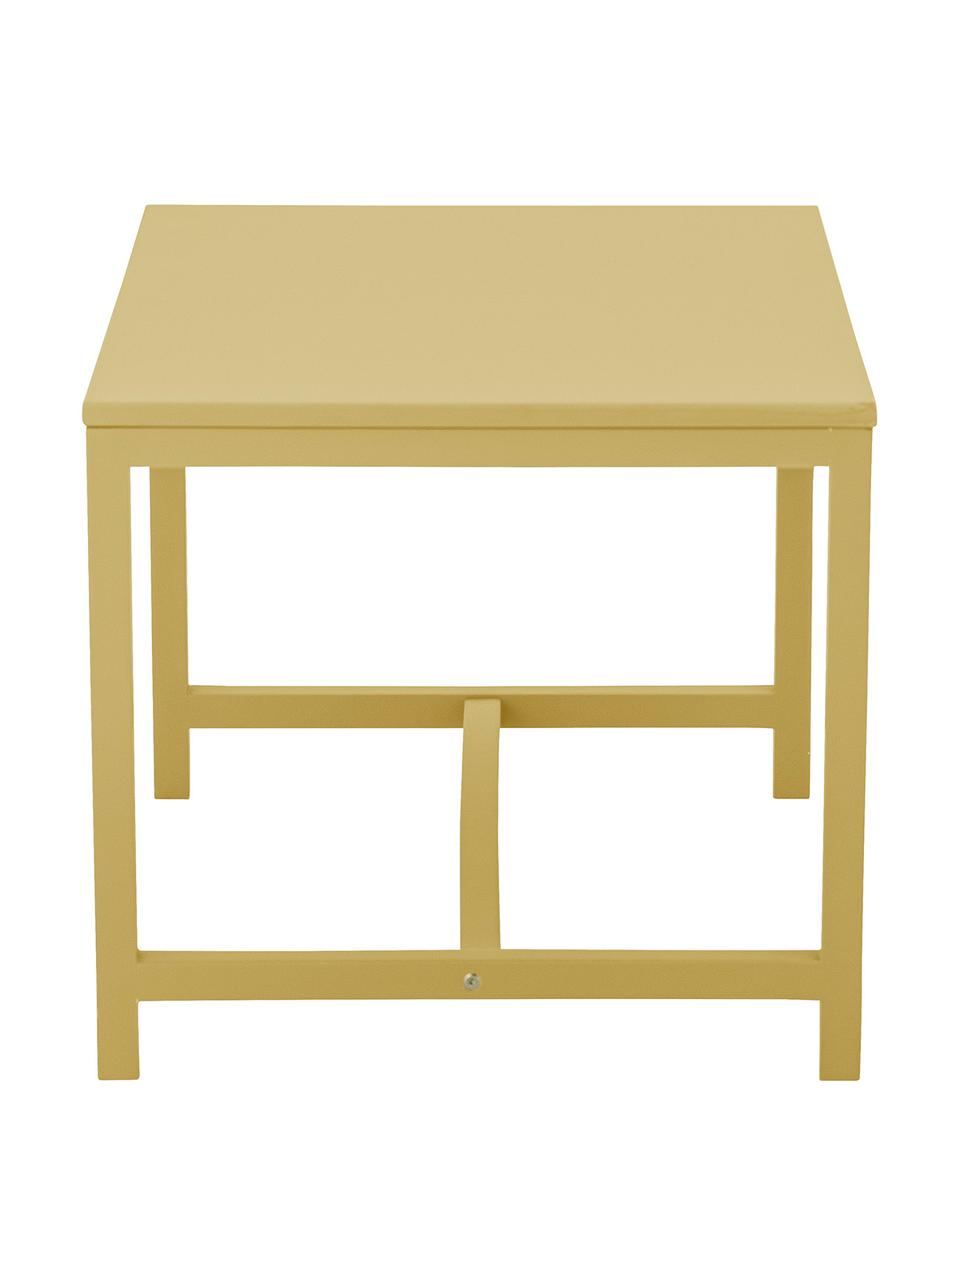 Table pour enfants Rese, MDF (panneau en fibres de bois à densité moyenne), bois d'hévéa, Jaune, larg. 73 x prof. 55 cm